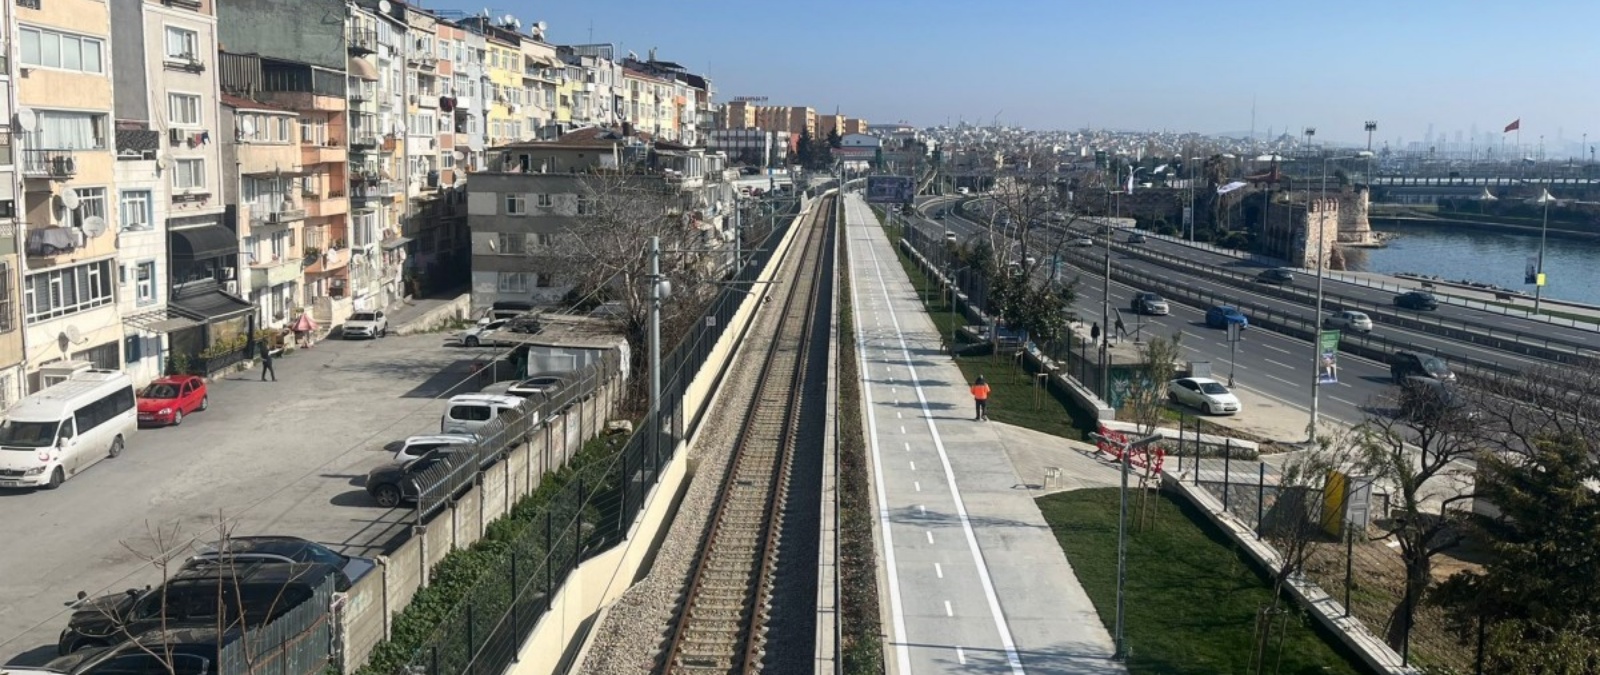 Sirkeci Kazlıçeşme rail service started